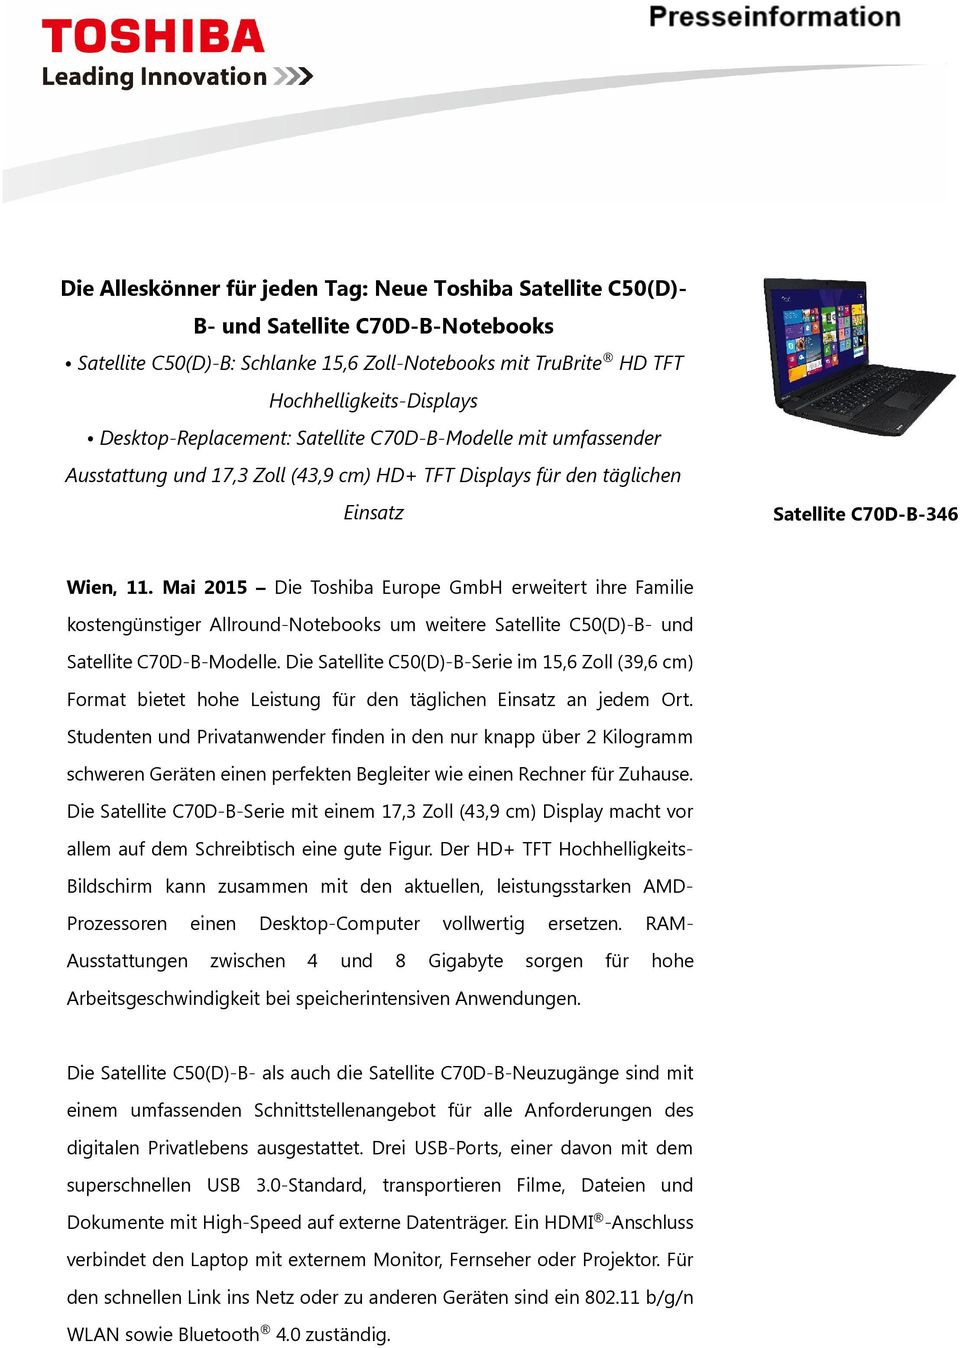 Mai 2015 Die Toshiba Europe GmbH erweitert ihre Familie kostengünstiger Allround-Notebooks um weitere Satellite C50(D)-B- und Satellite C70D-B-Modelle.